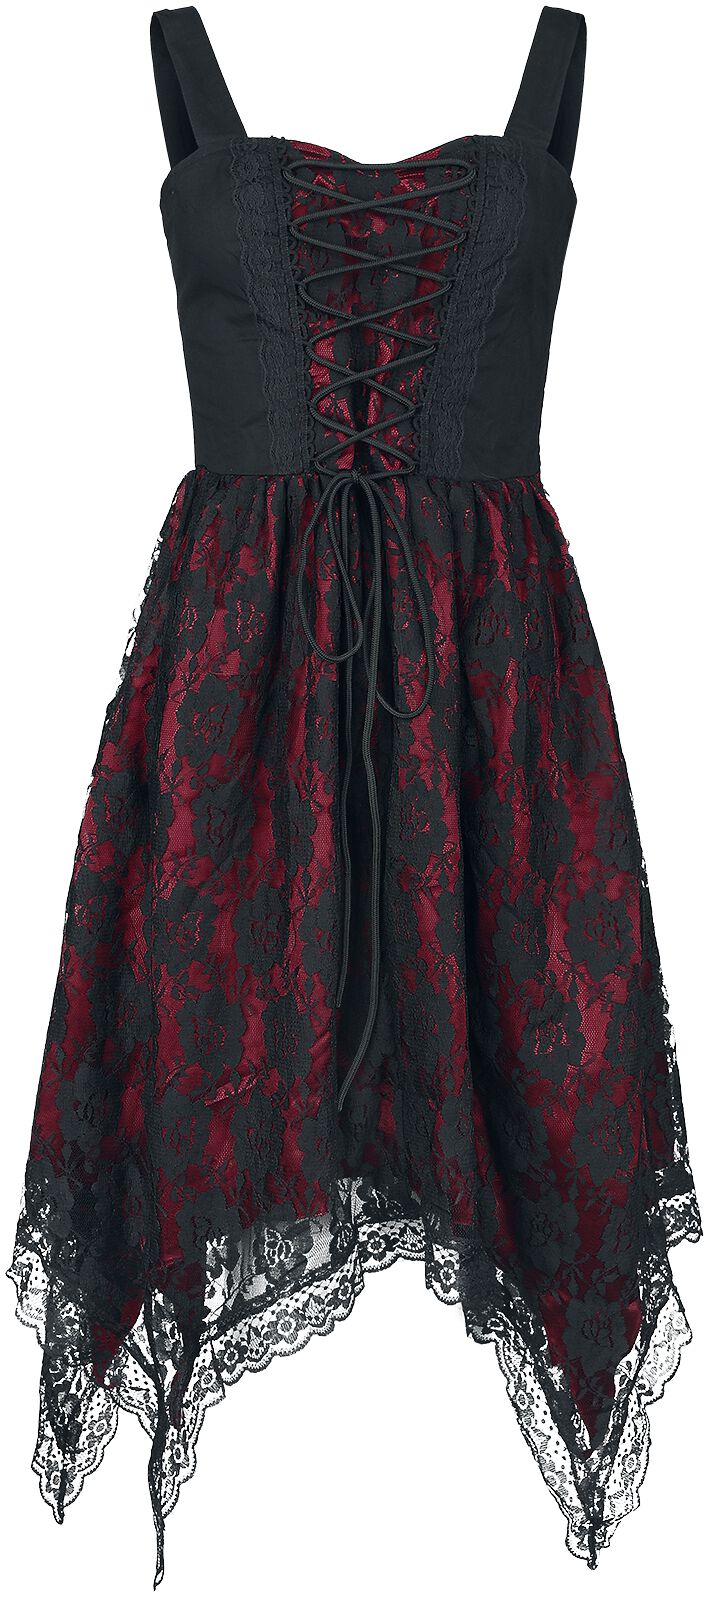 Gothicana by EMP - Kleid mit Spitze und Zipfelsaum - Kurzes Kleid - schwarz|rot - EMP Exklusiv!